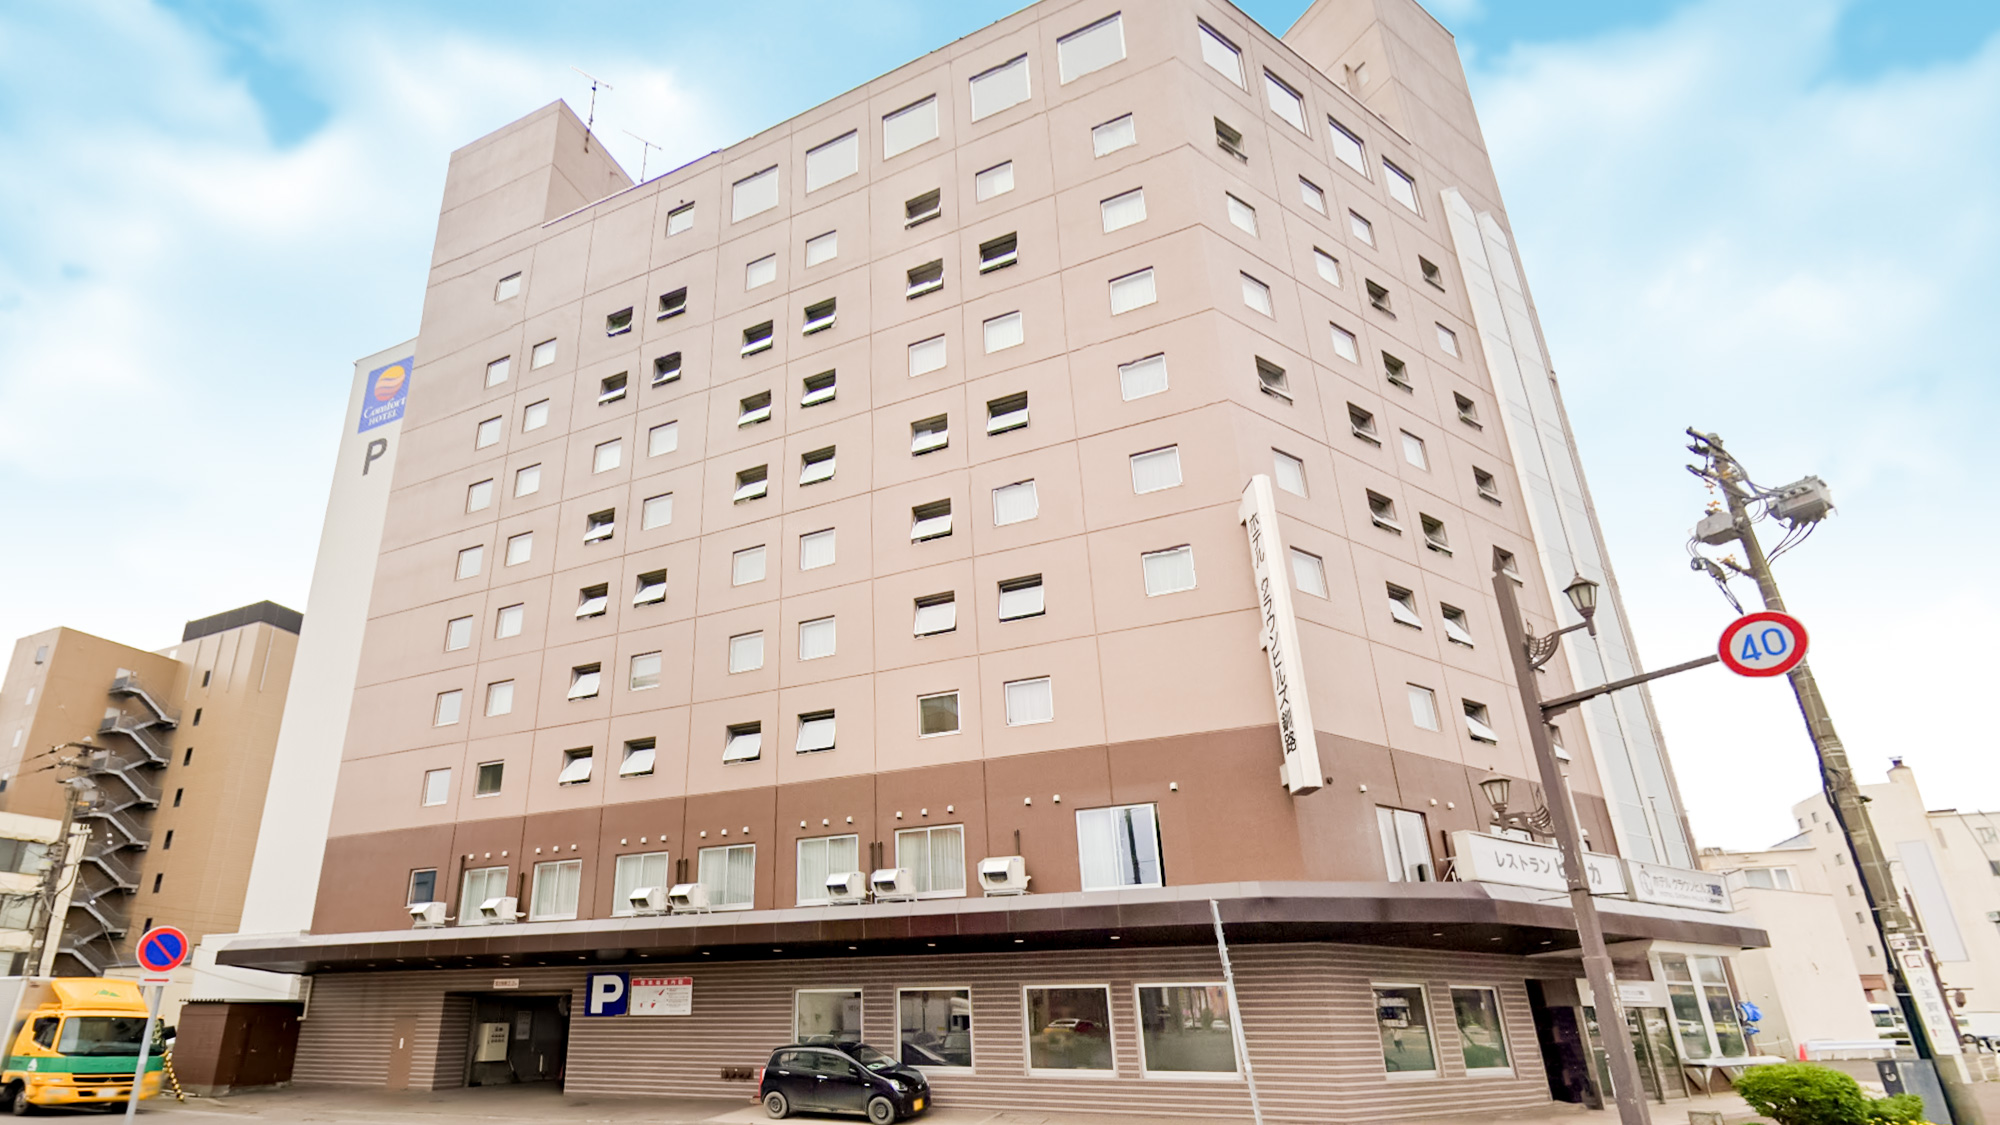 釧路和商市場へアクセス便利なホテル